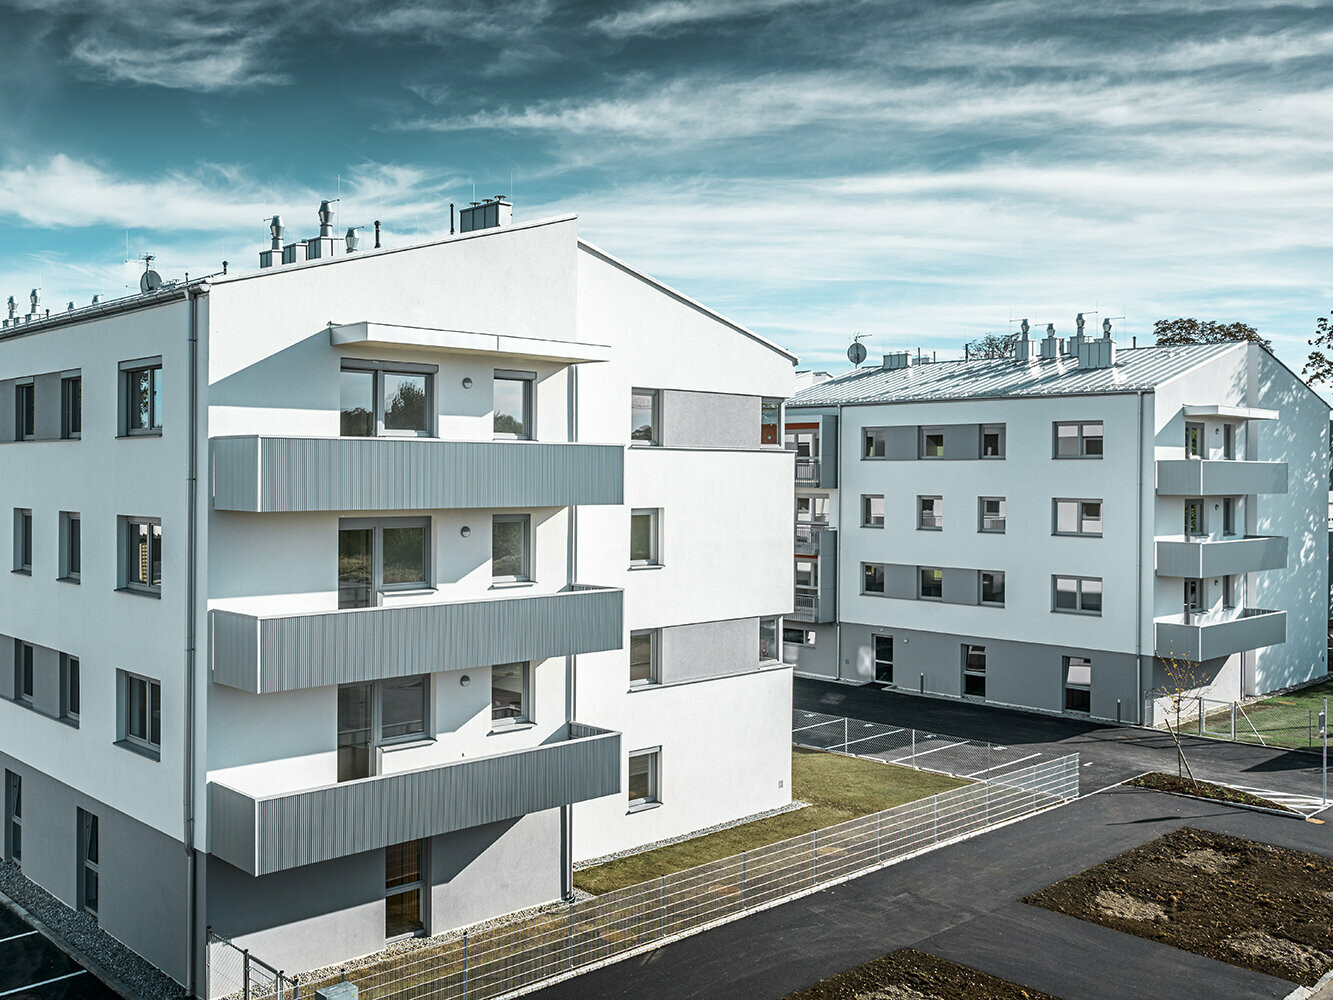 Moderný bytový dom s bielou fasádou a balkónmi s PREFA prelamovaným profilom vo farbe strieborná metalíza